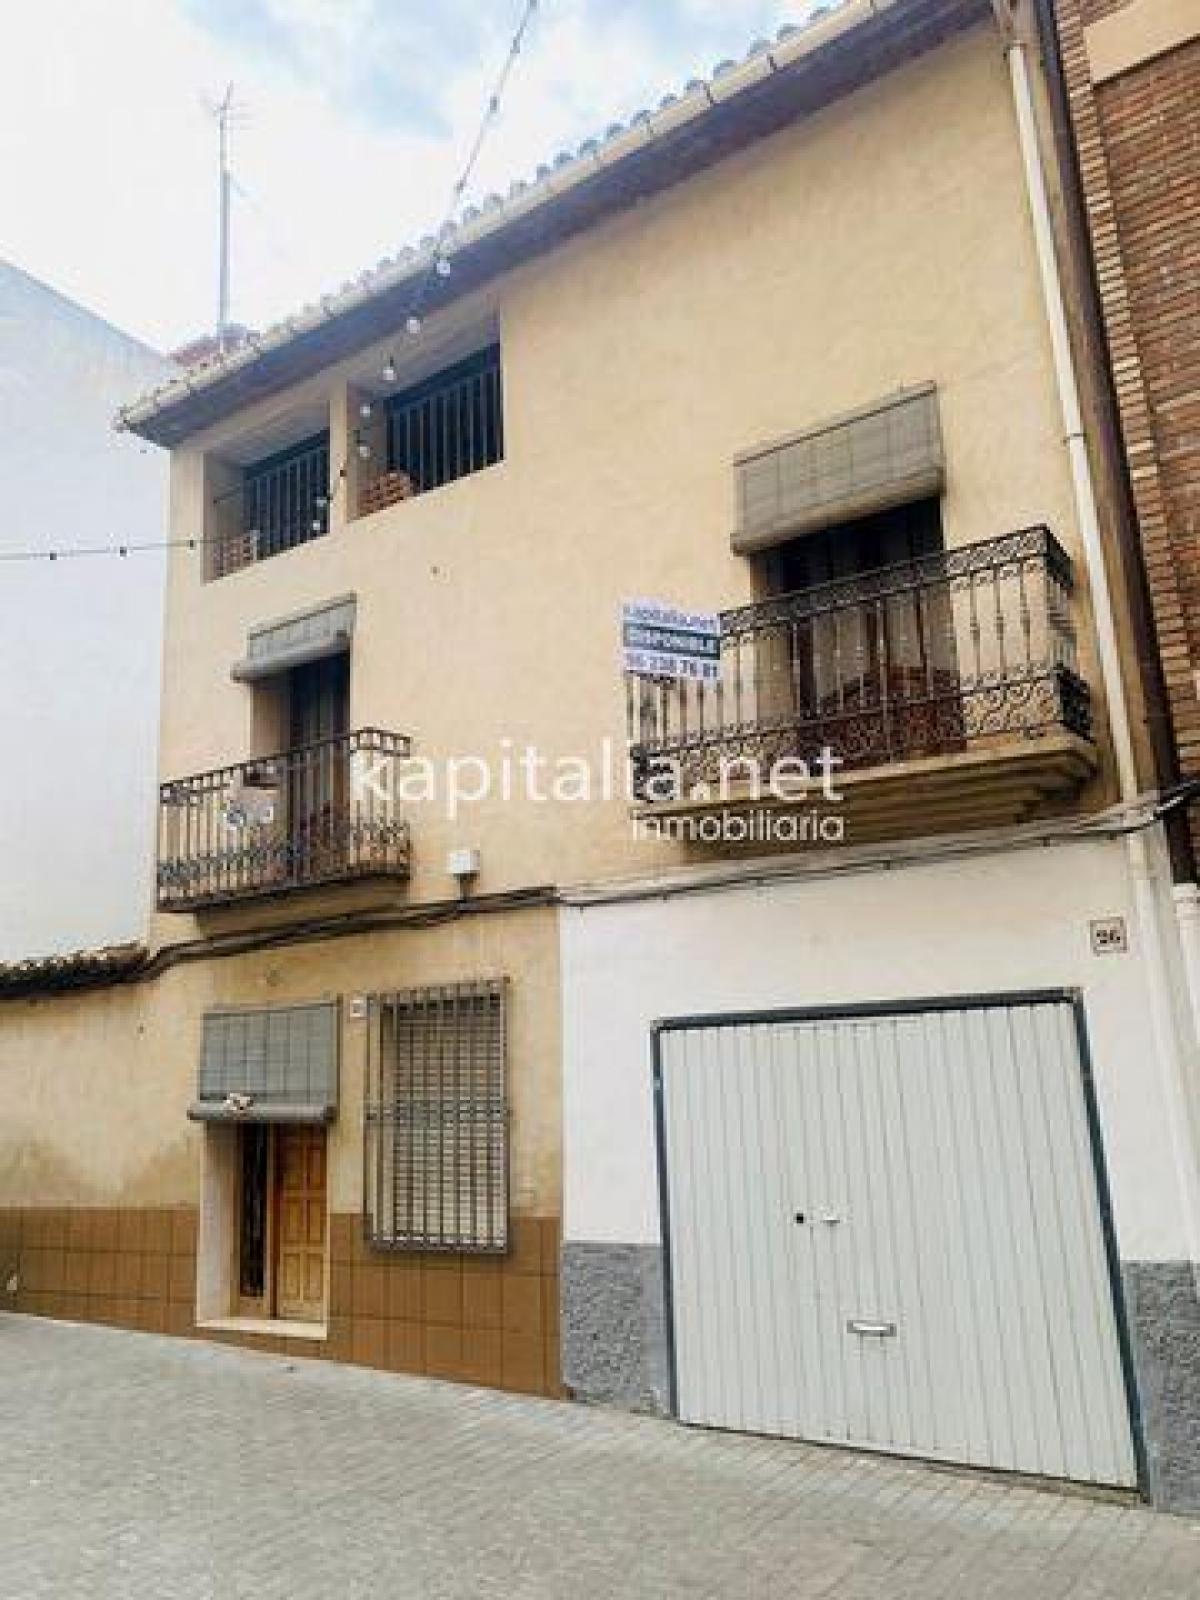 Picture of Home For Sale in Castello De Rugat, Valencia, Spain